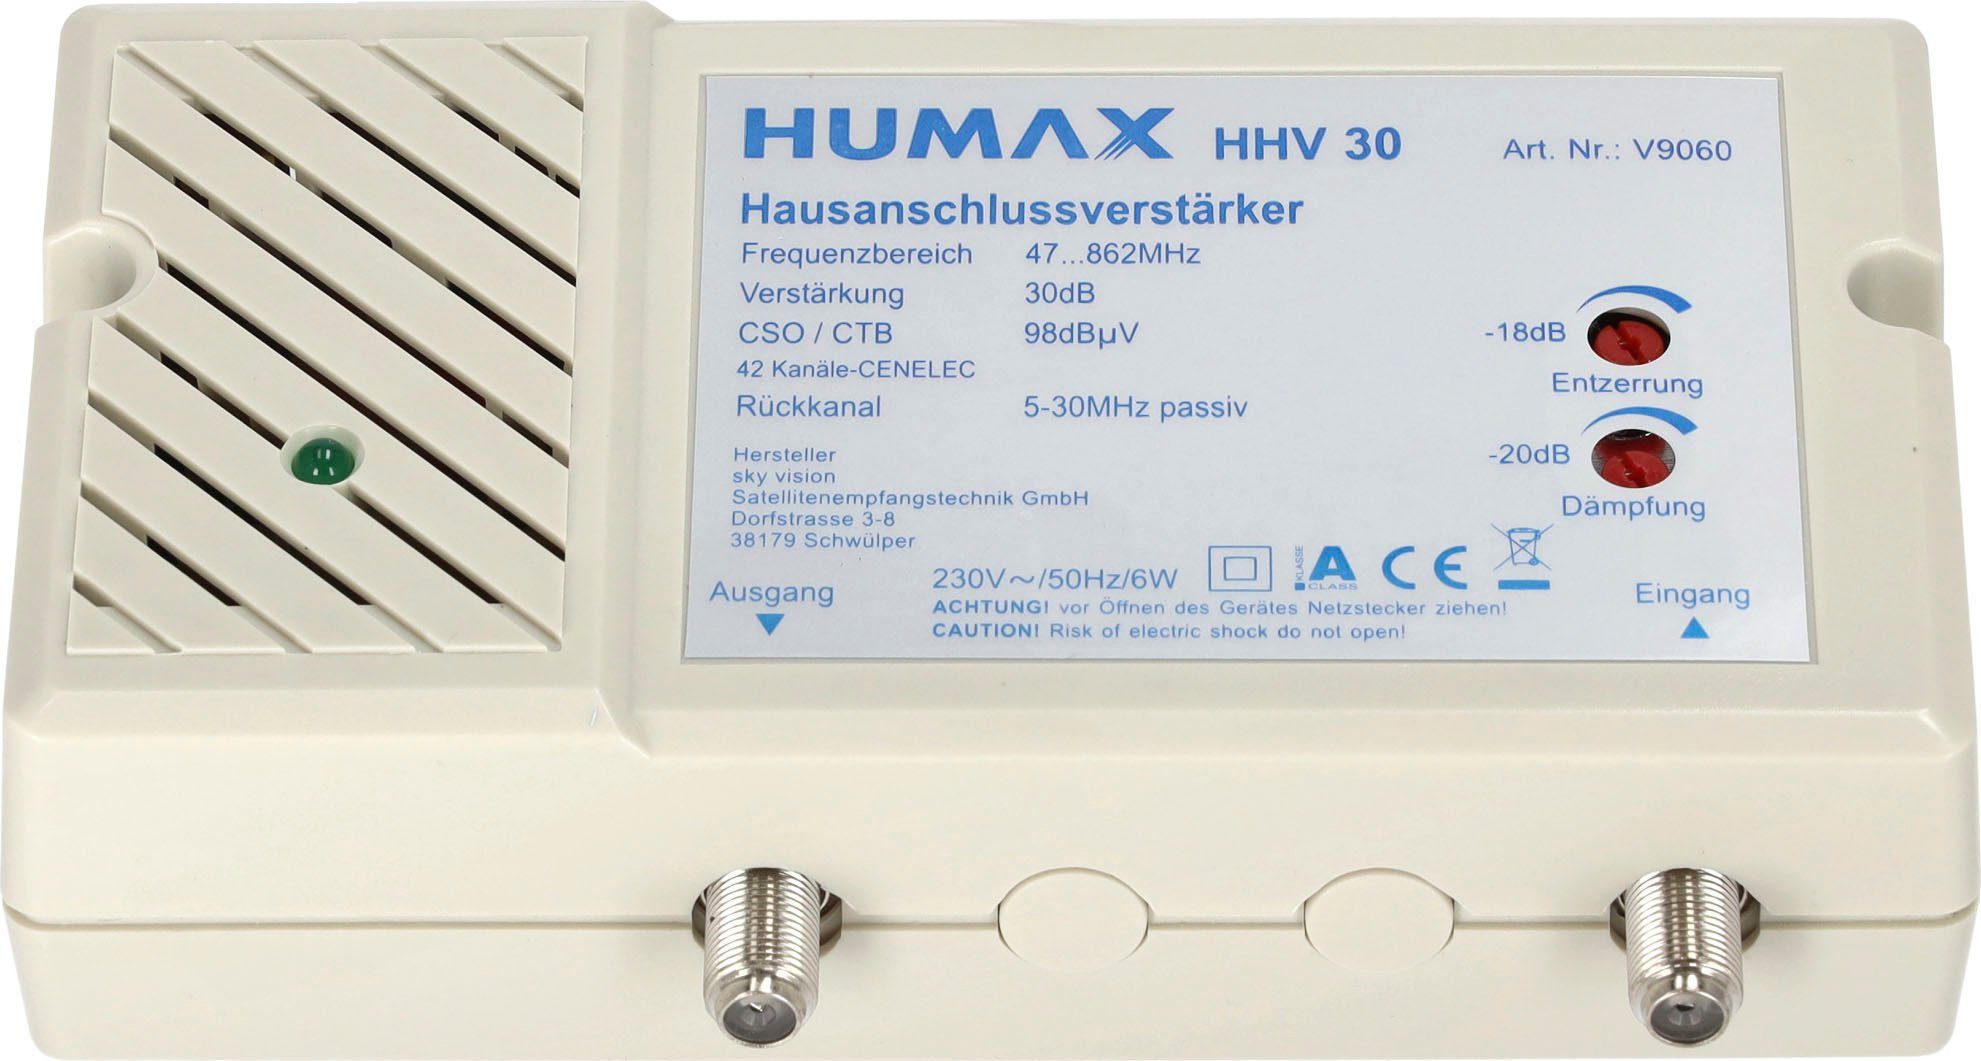 HHV Leistungsverstärker 30 Humax